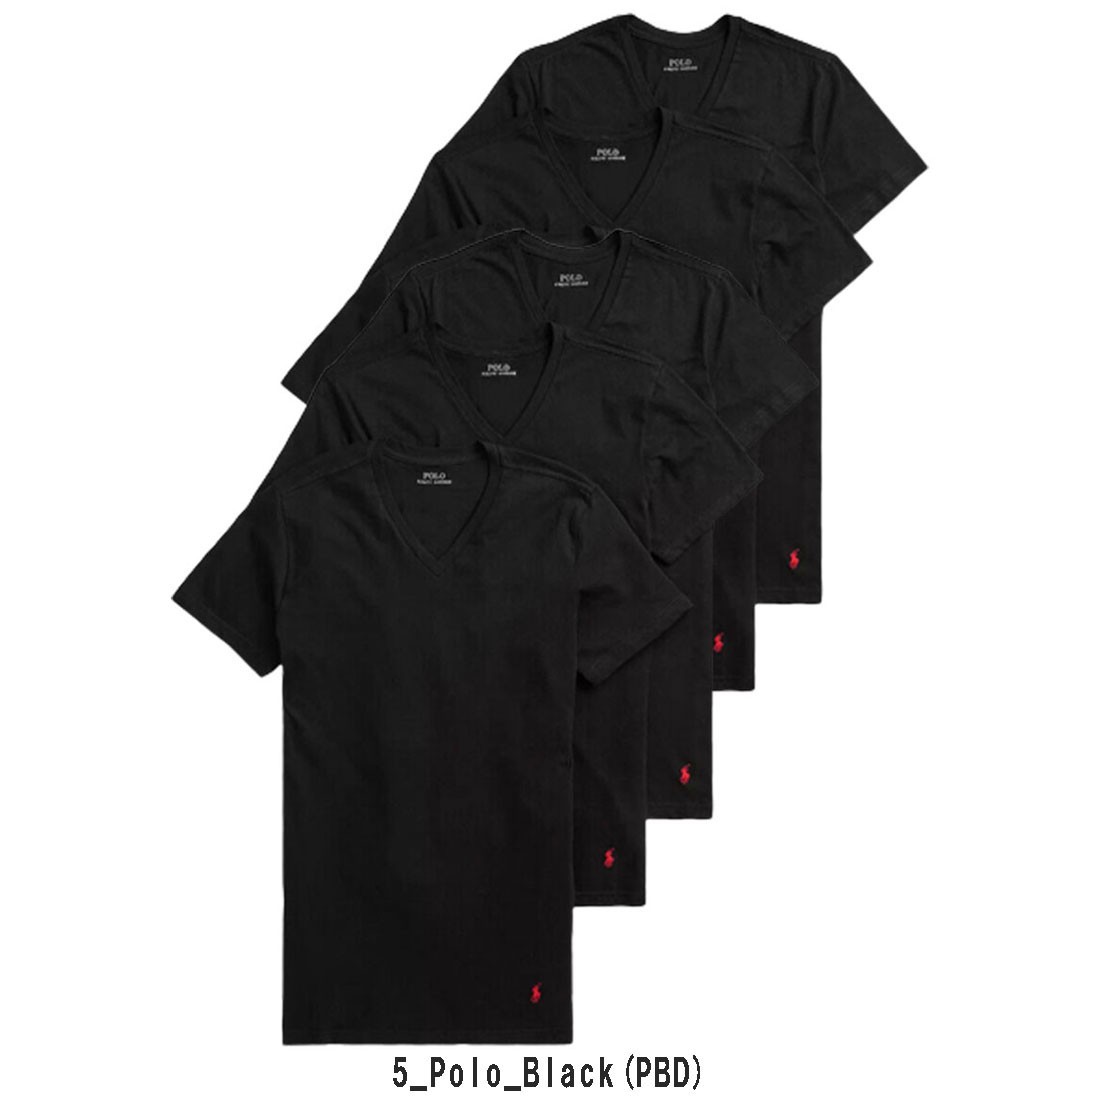 【在庫有】 5枚セット ラルフローレン)Tシャツ LAUREN(ポロ RALPH (SALE)POLO Cotton pr32-ncvnp5-pbd-m★3 M 5_Polo_Black(PBD) NCVNP5 Fit Classic Mサイズ